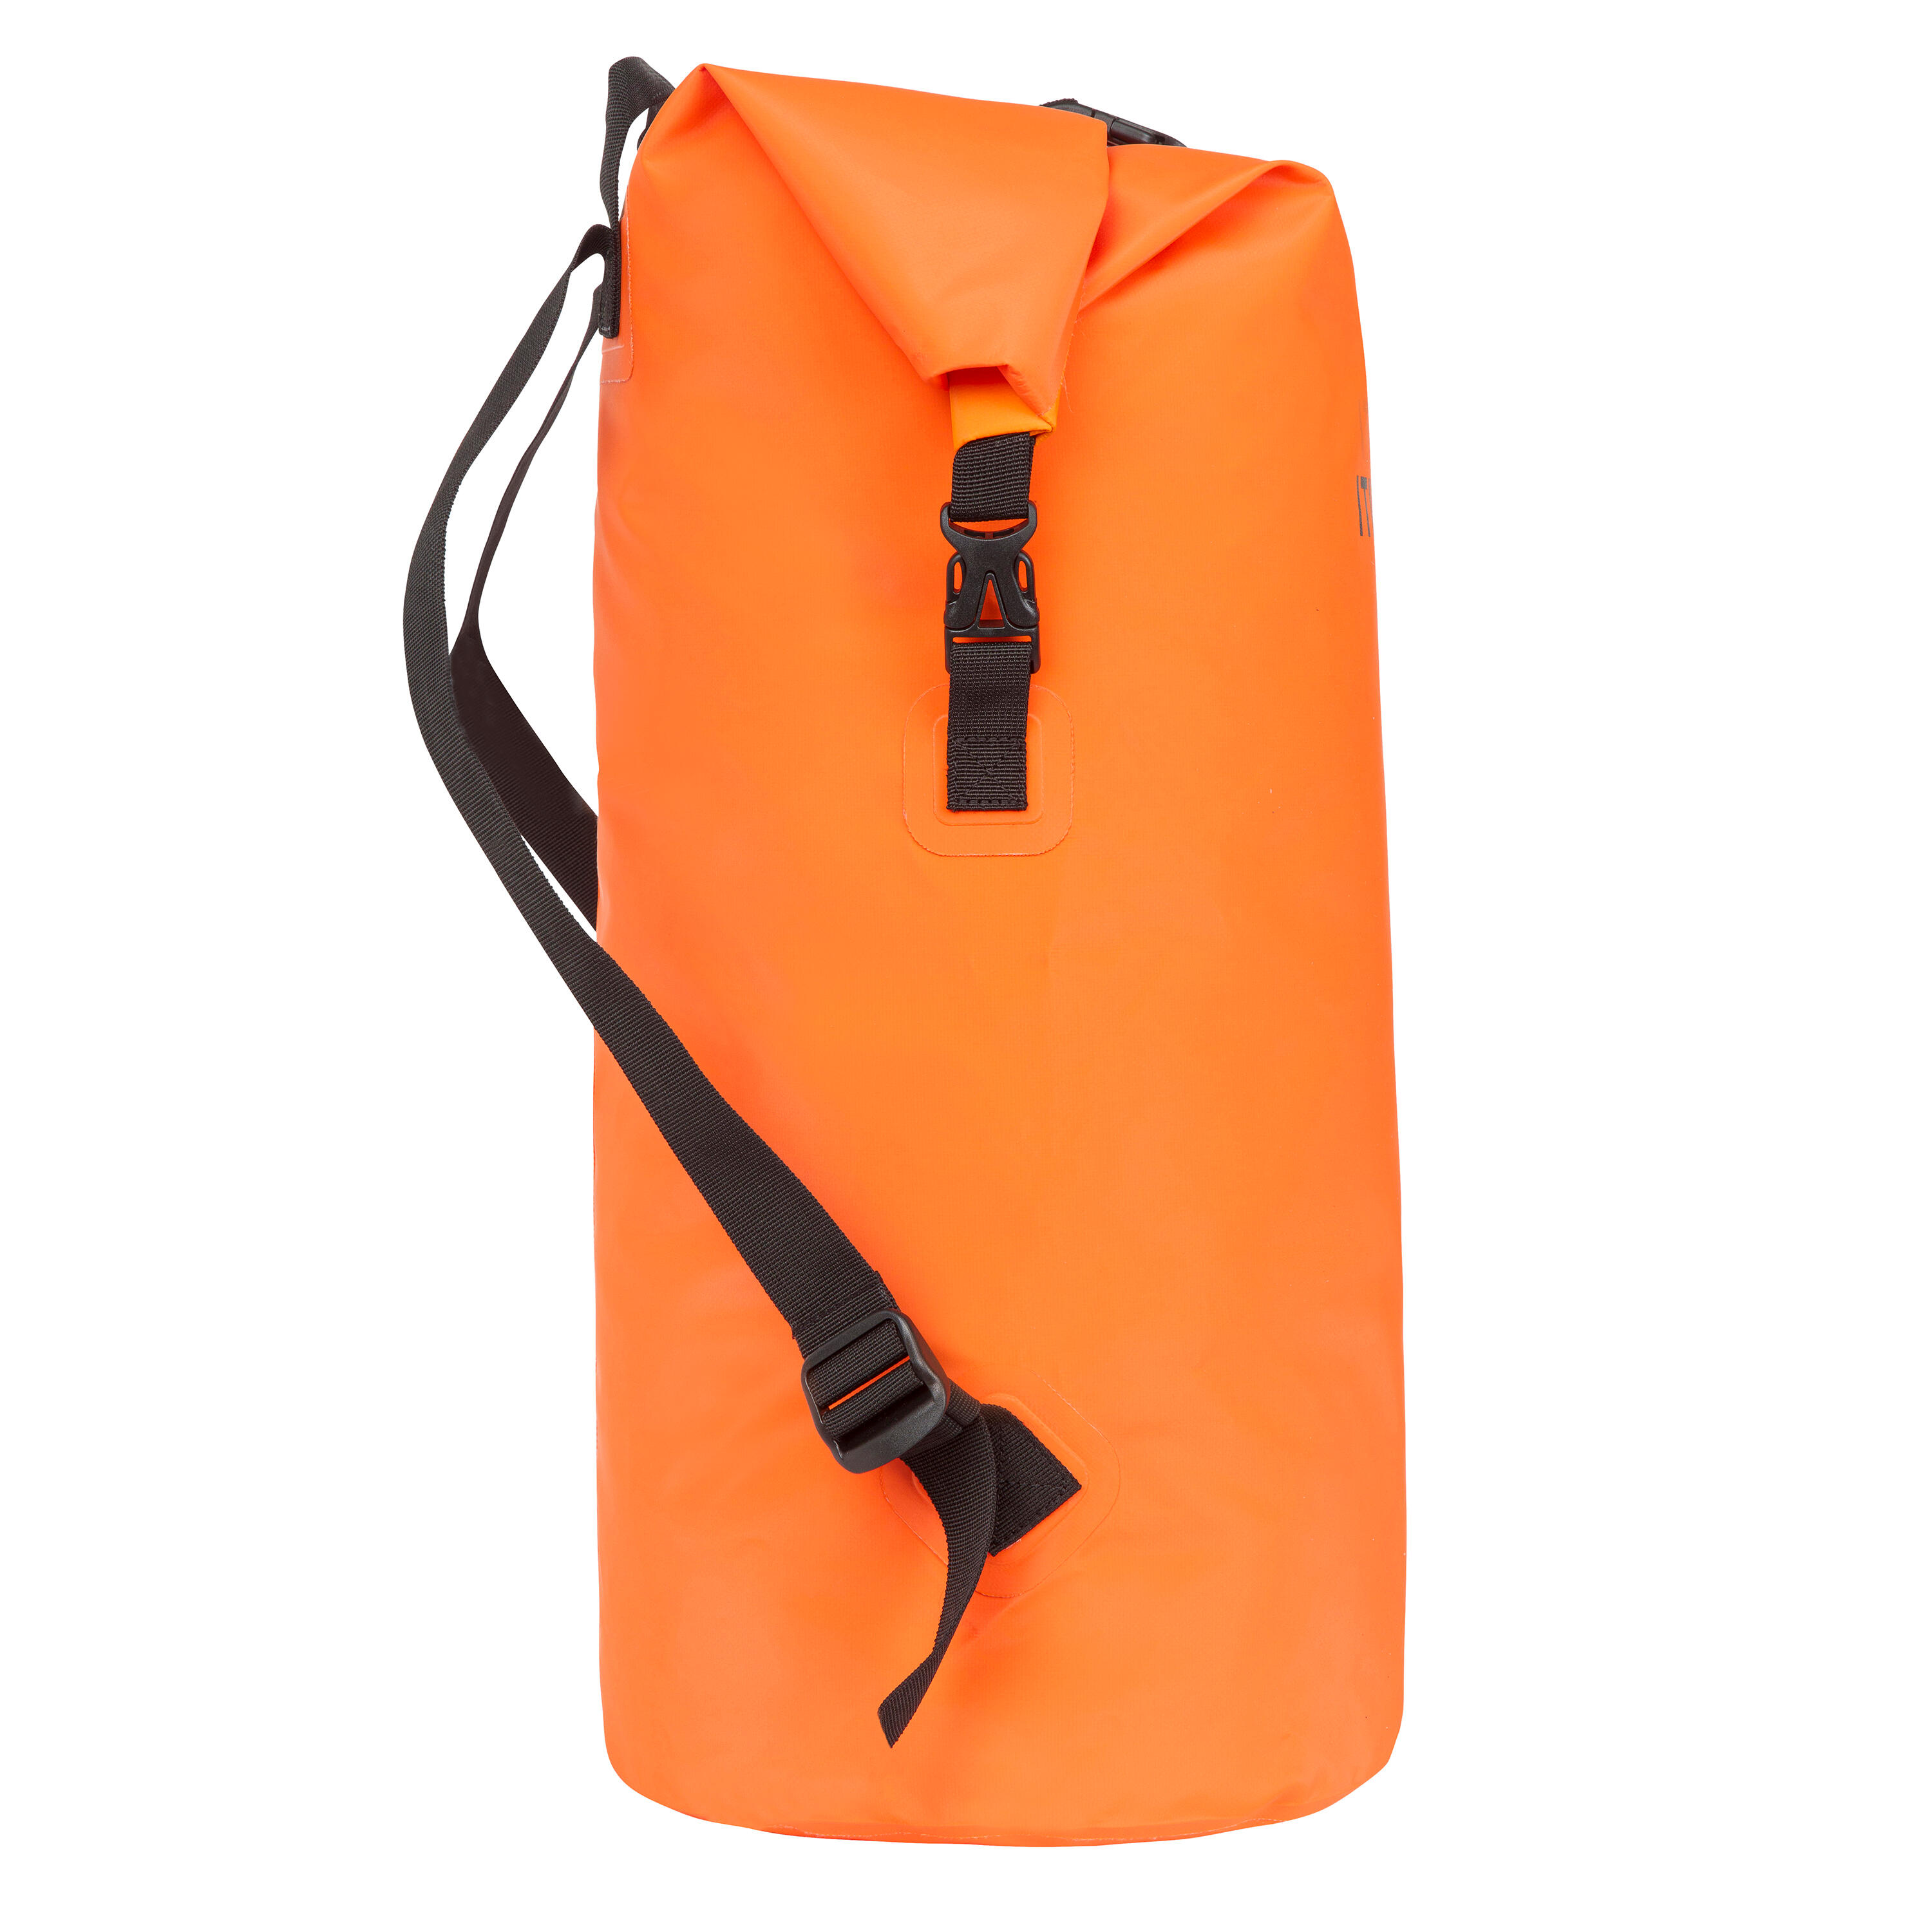 40 L Waterproof Dry Bag - Blood orange, Deep orange - Itiwit - Decathlon